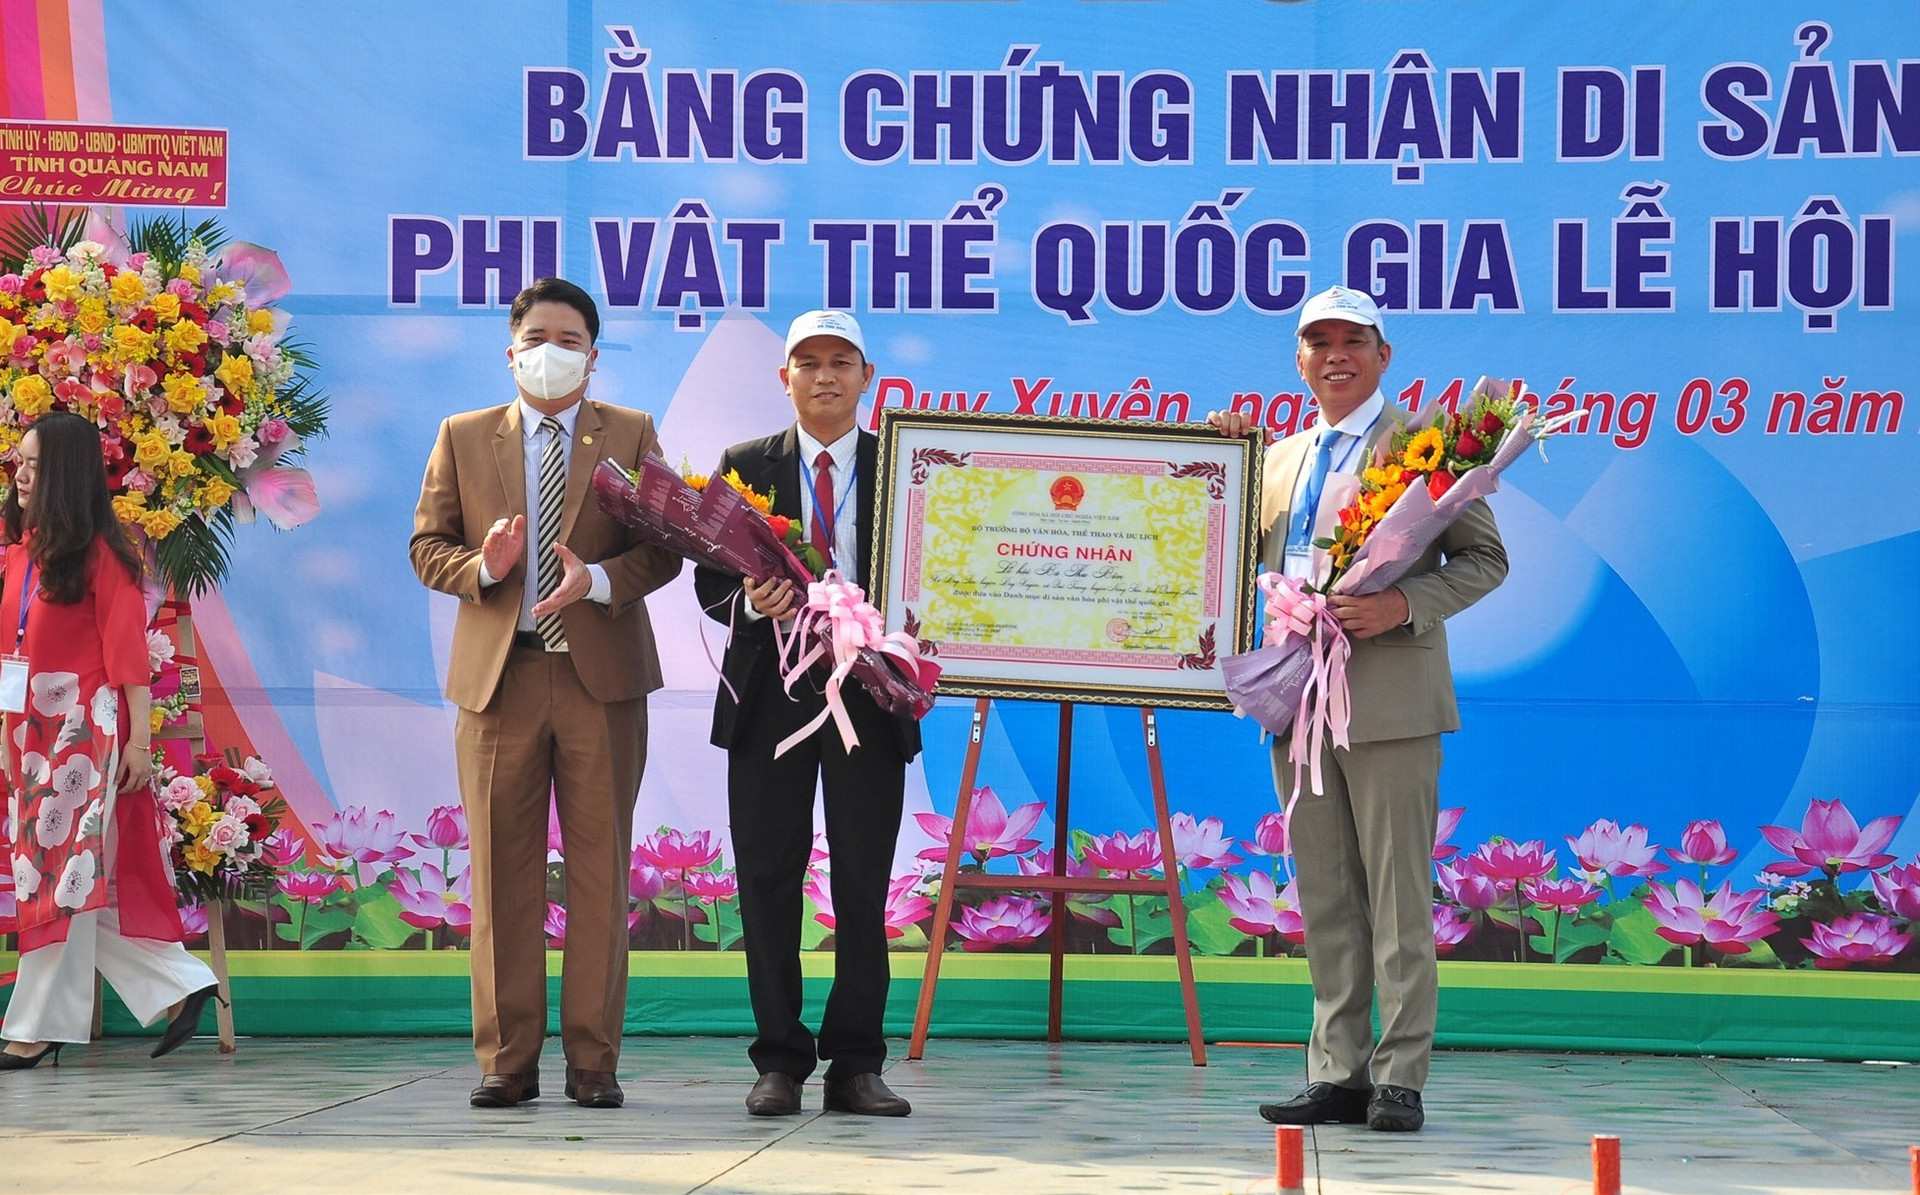 Phó Chủ tịch UBND tỉnh Trần Văn Tân trao bằng chứng nhận Di sản văn hóa phi vật thể cấp quốc gia Lễ hội Bà Thu Bồn cho lãnh đạo địa phương. Ảnh: S.Đ